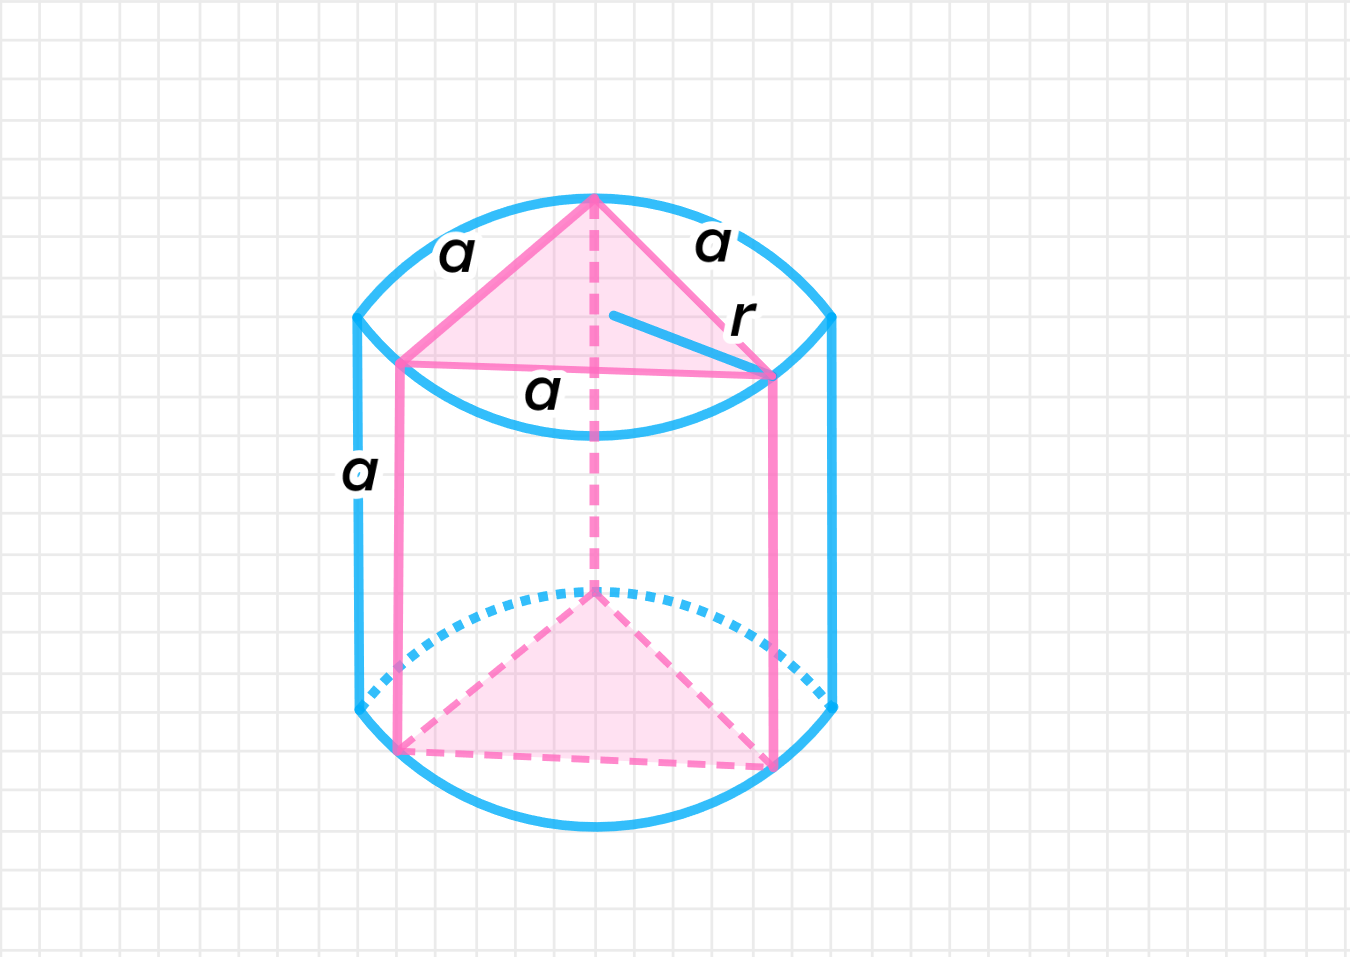 Призма описана около шара. Треугольная Призма вписана в цилиндр. Призма вписанная в цилиндр по клеточкам. Прямоугольная Призма вписана в цилиндр. Цилиндр вписан прав треугольнуюпирамиду картинка.